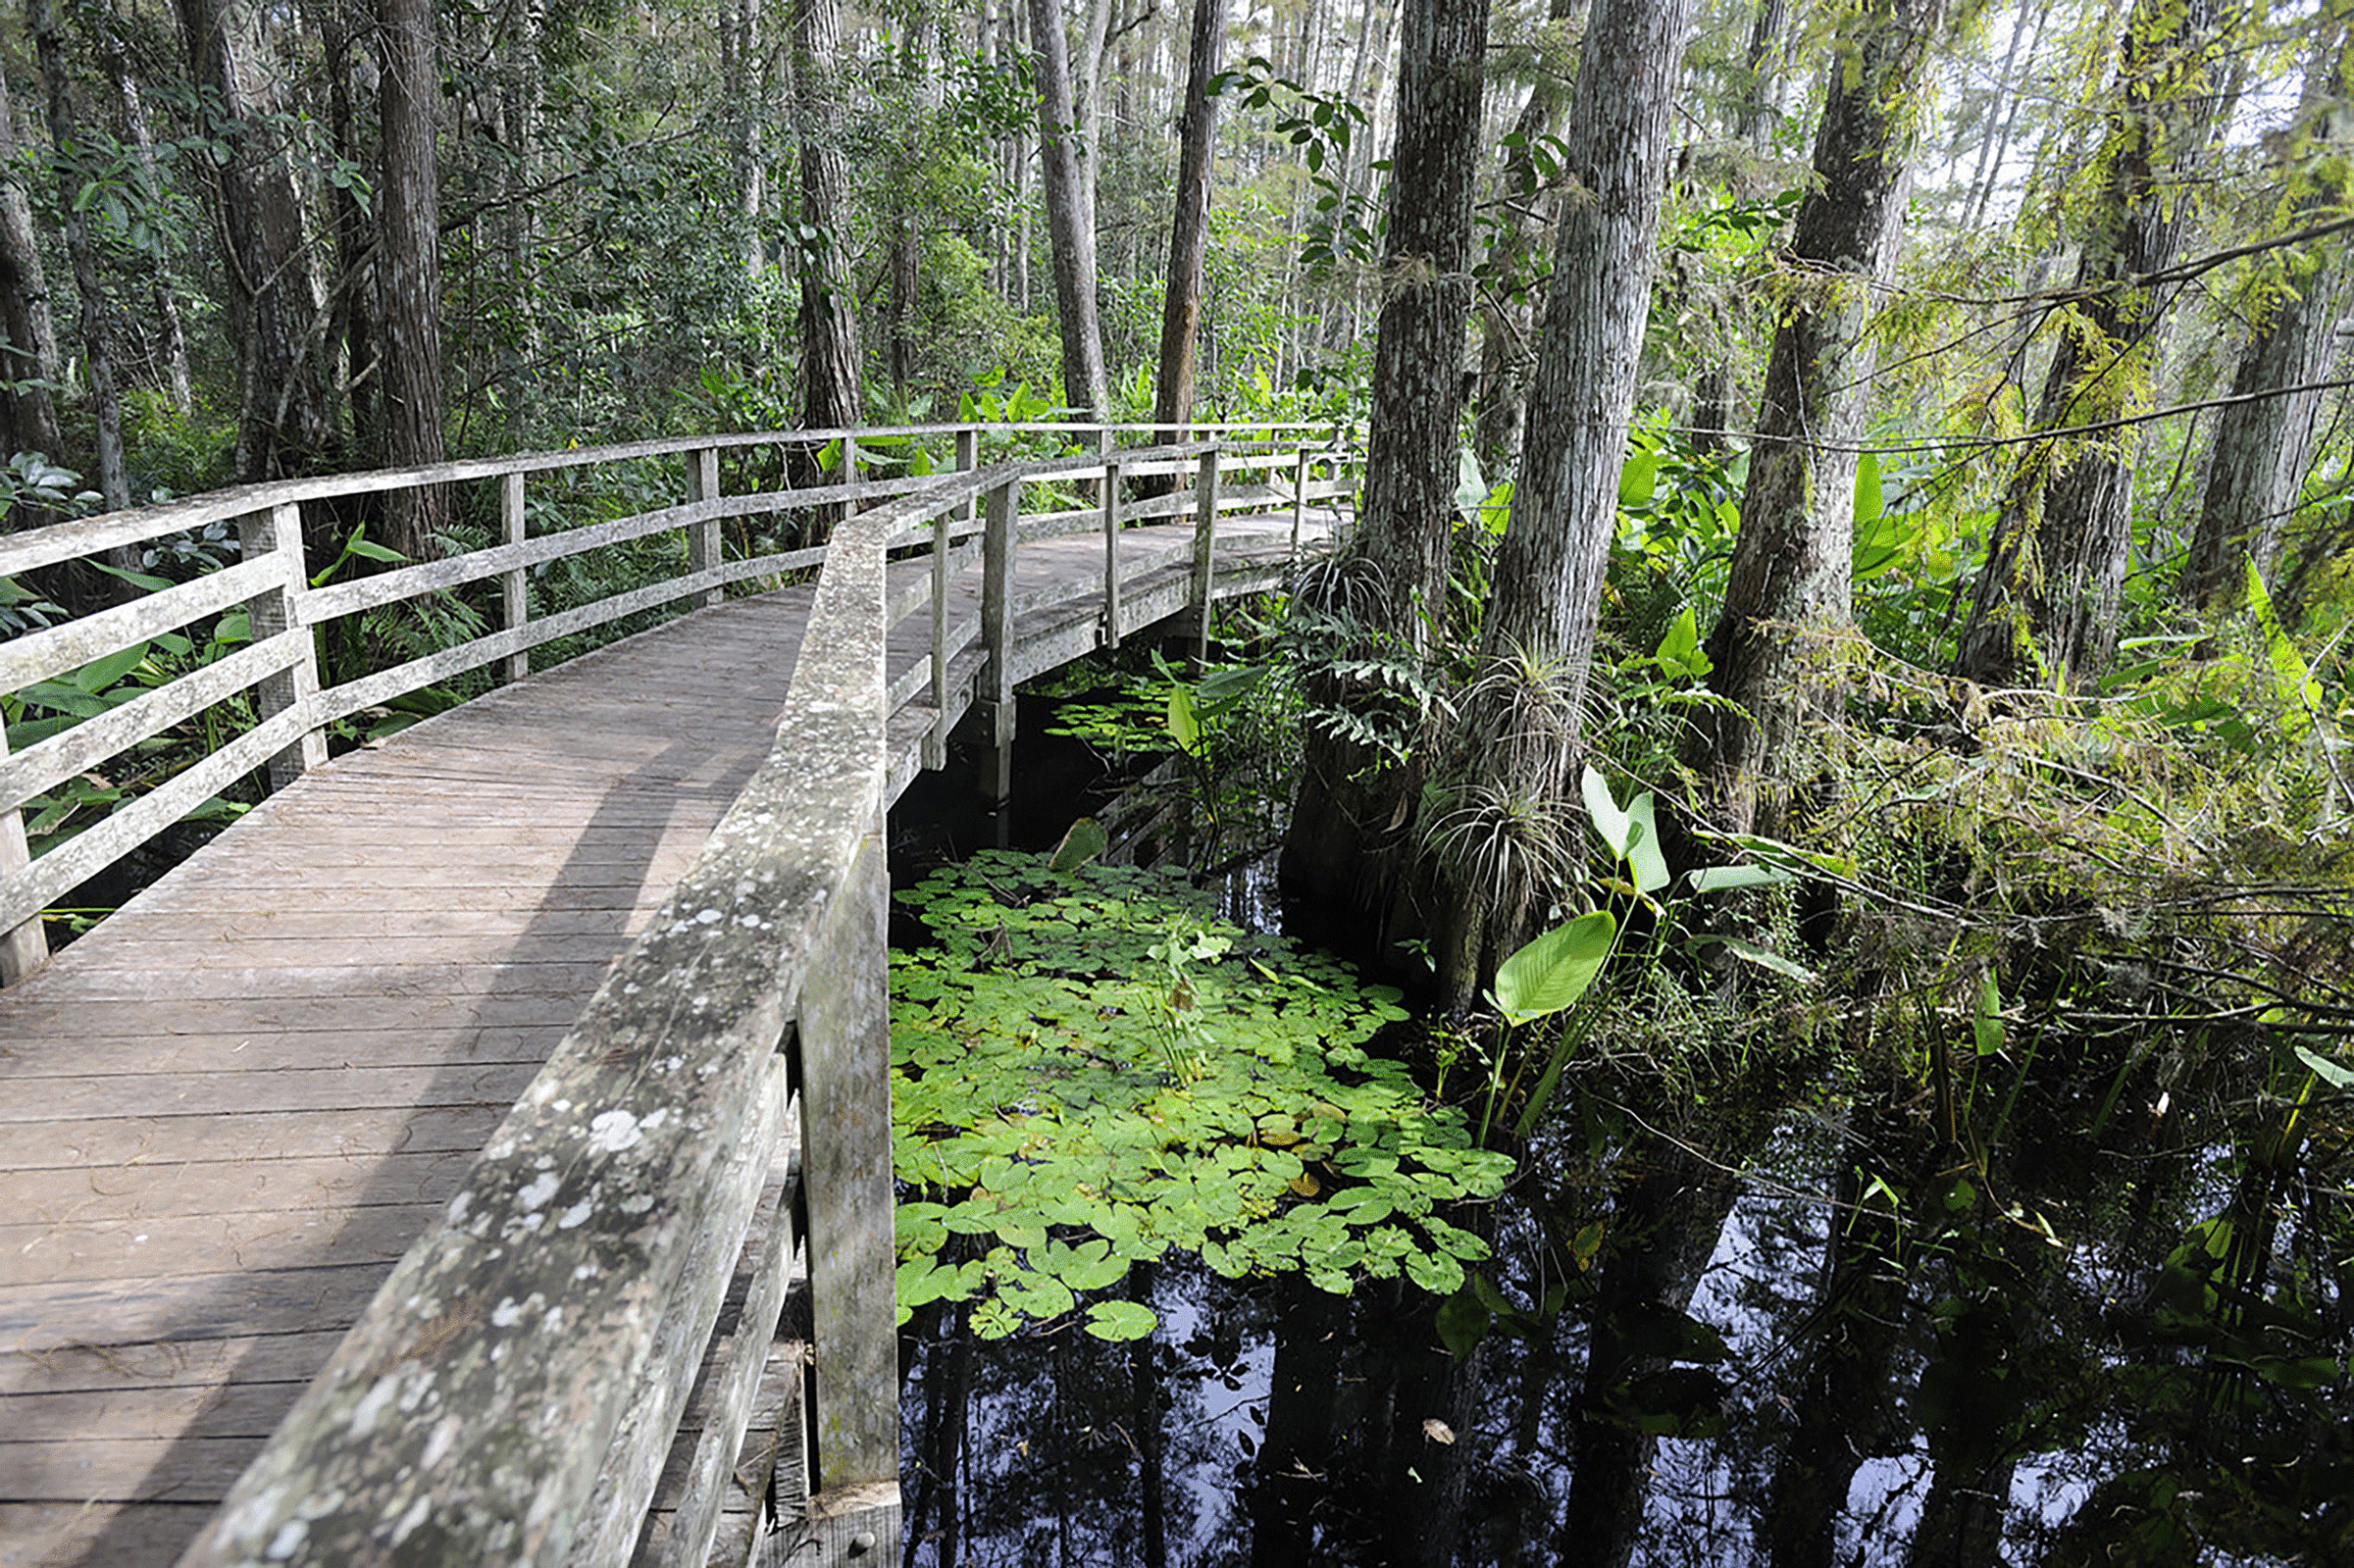 Support The Sanctuary Audubon Corkscrew Swamp Sanctuary